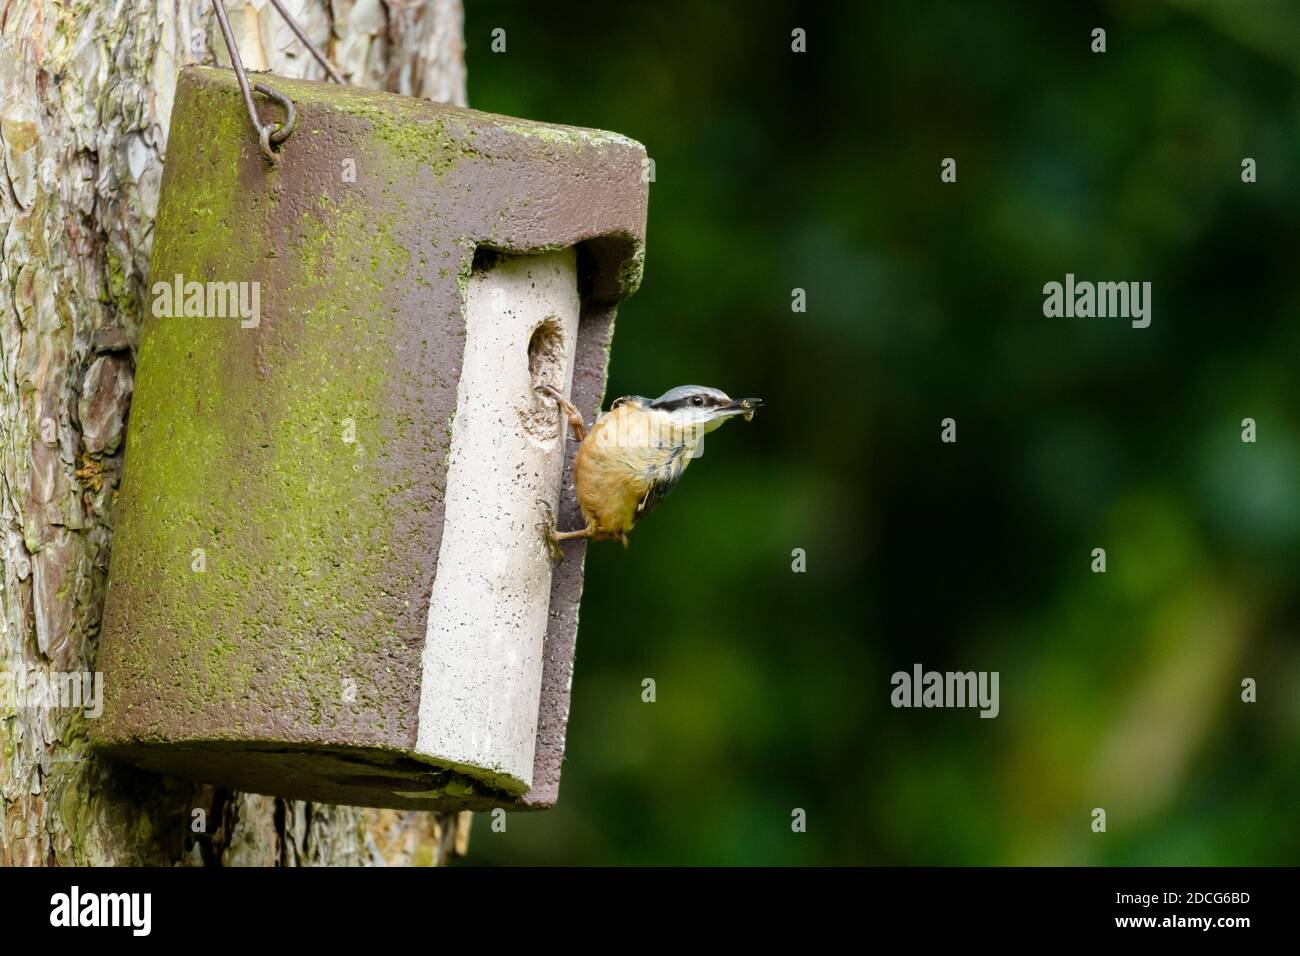 Primo piano di un singolo, piccolo nuthatch (uccello da giardino) aggrappato alla scatola di nido di albero-appeso da foro di entrata (insetto in becco) - Yorkshire occidentale, Inghilterra, Regno Unito. Foto Stock